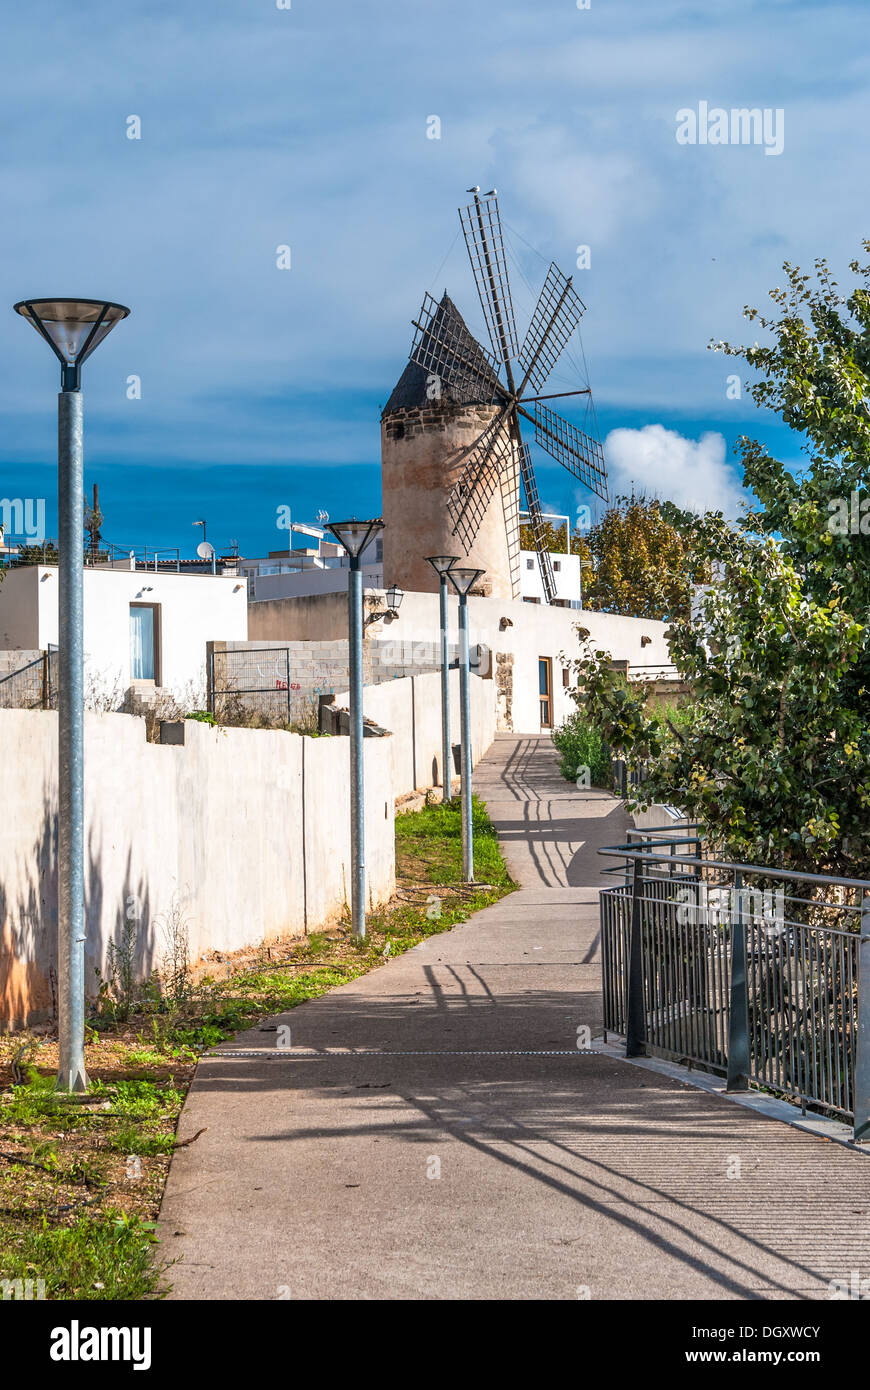 Das Bild zeigt eine traditionelle Windmühle auf den Straßen von Palma de Mallorca, Spanien Stockfoto